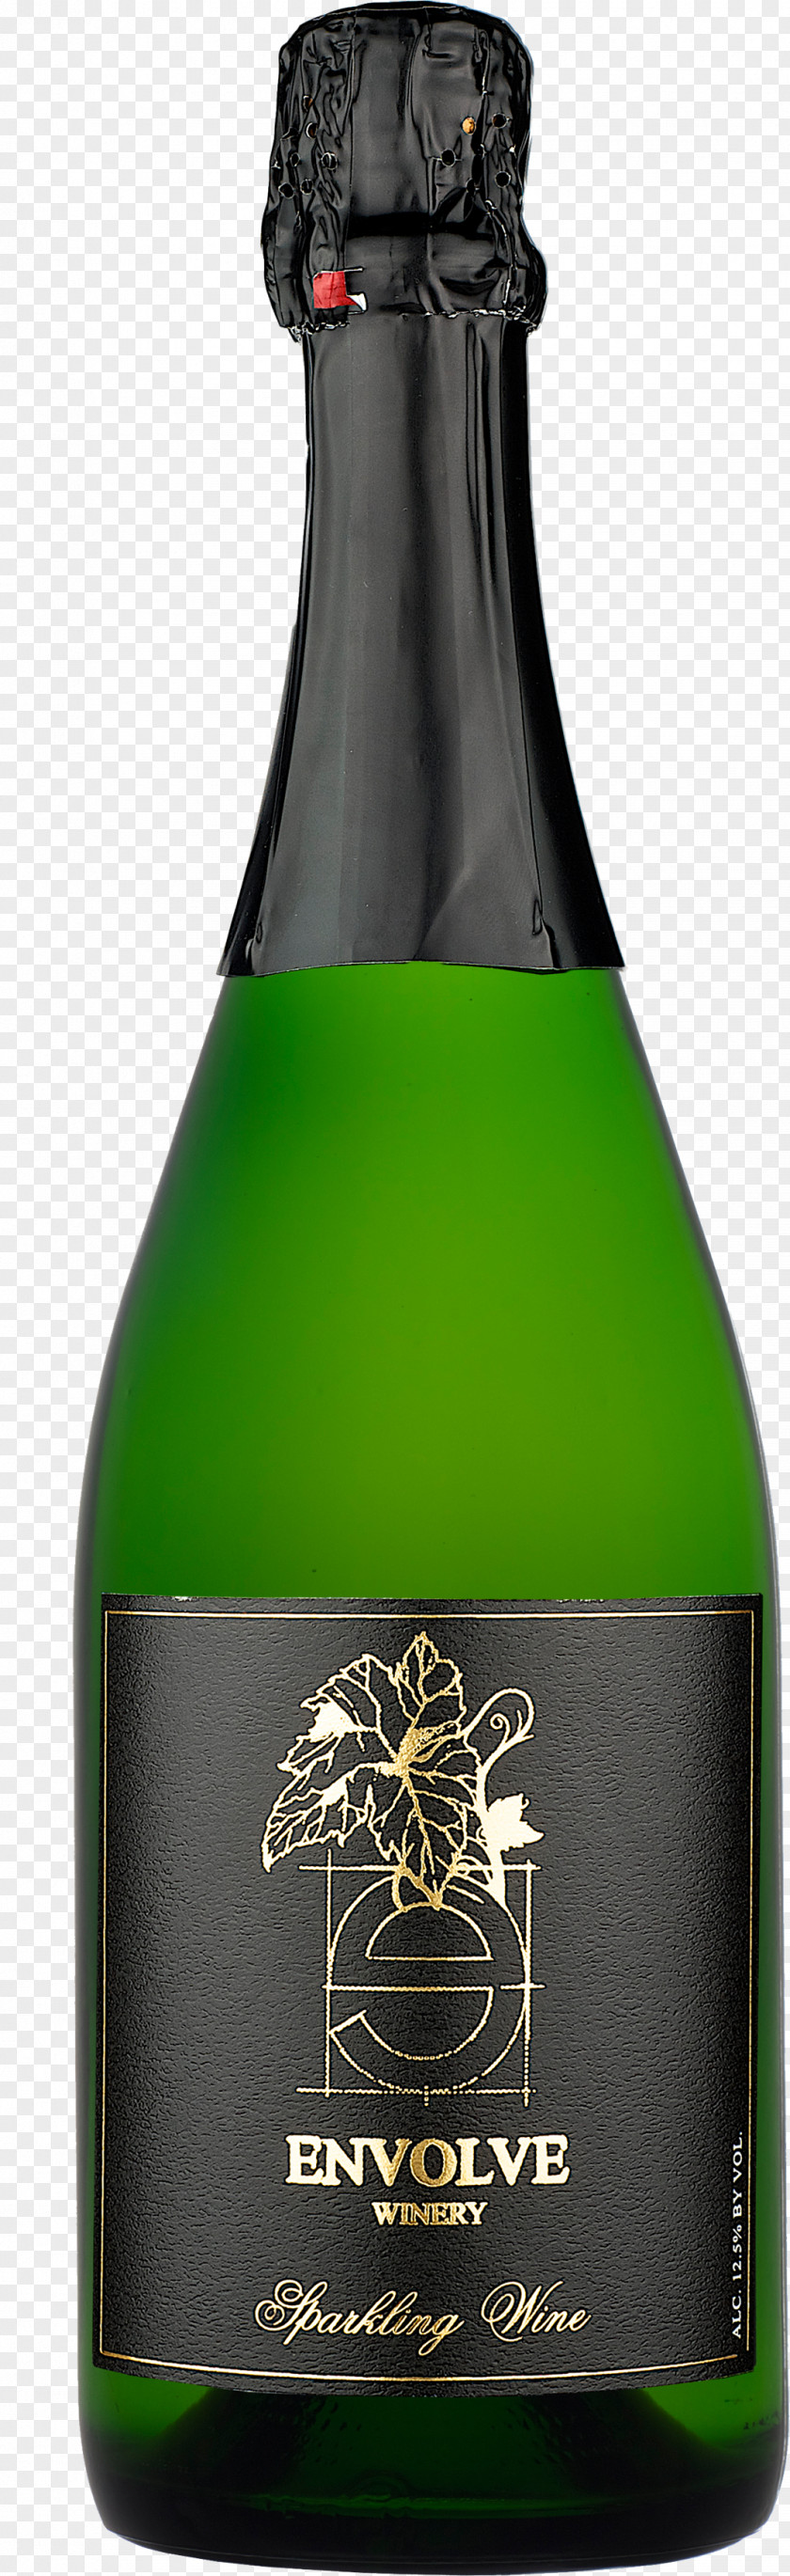 Wine Bottle Image Champagne Sparkling Chardonnay PNG